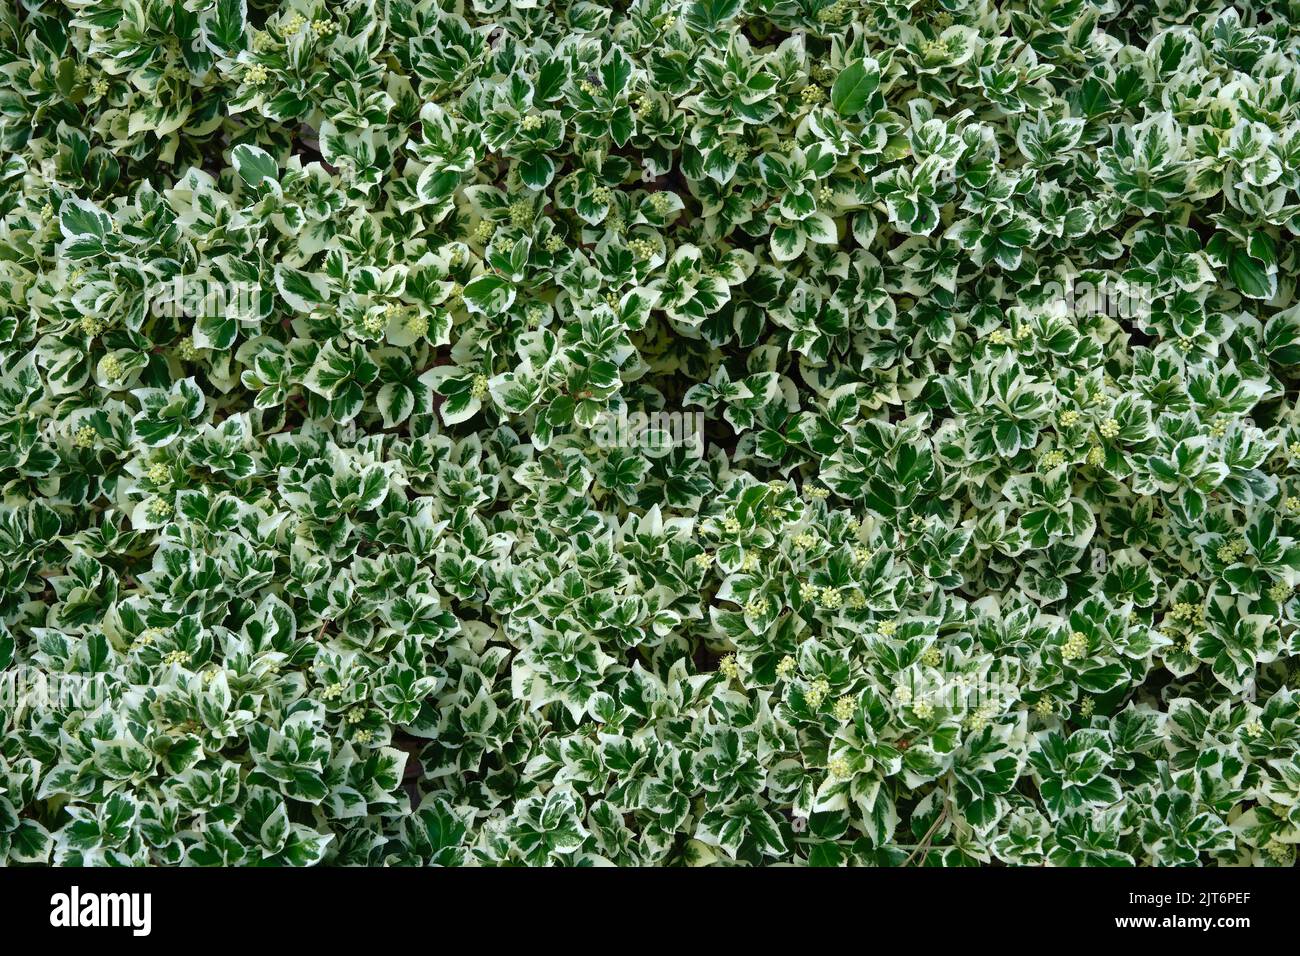 Fondo de la Fortuna Euonymus hojas de reina de plata. Euonymus fortunei invierno o follaje de huso, vista superior. Foto de stock